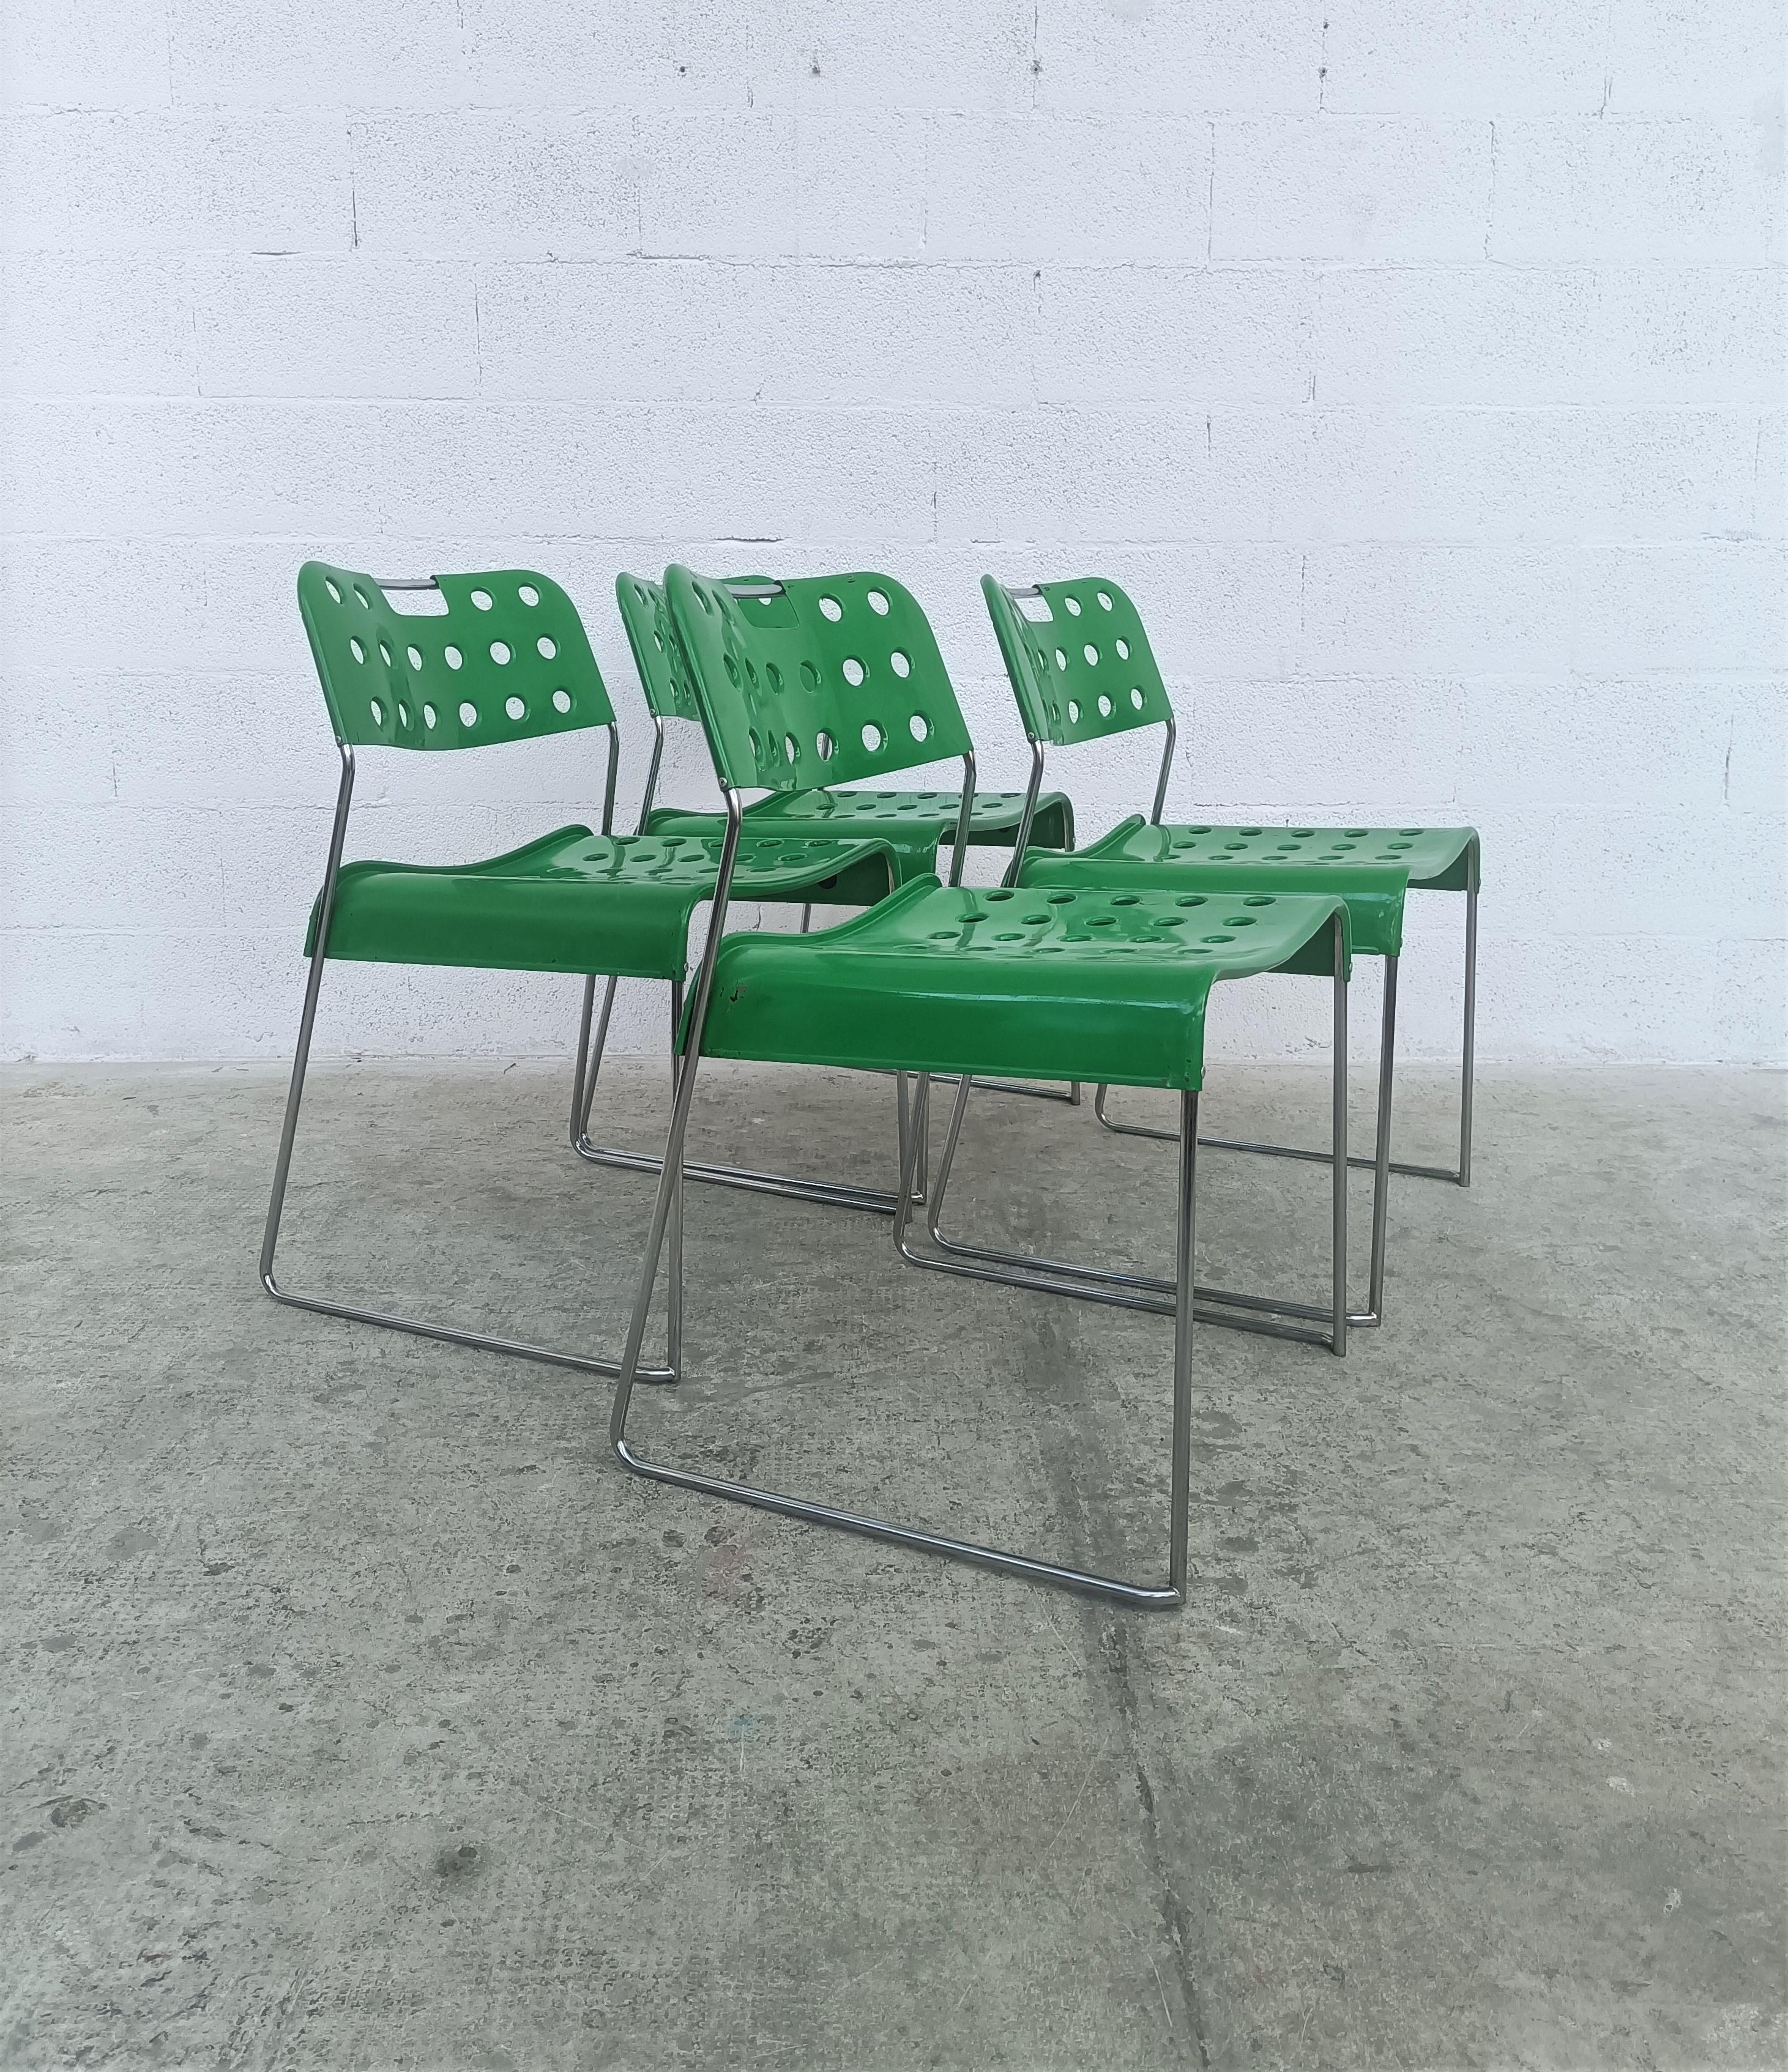 4 Chaises de salle à manger en métal modèle Omkstak conçu par Rodney Kinsman et produit par Bieffeplast années 1970.
Structure en tube d'acier chromé, assise et dossier en tôle d'acier moulée revêtue de résine époxy jaune. Les détails perforés